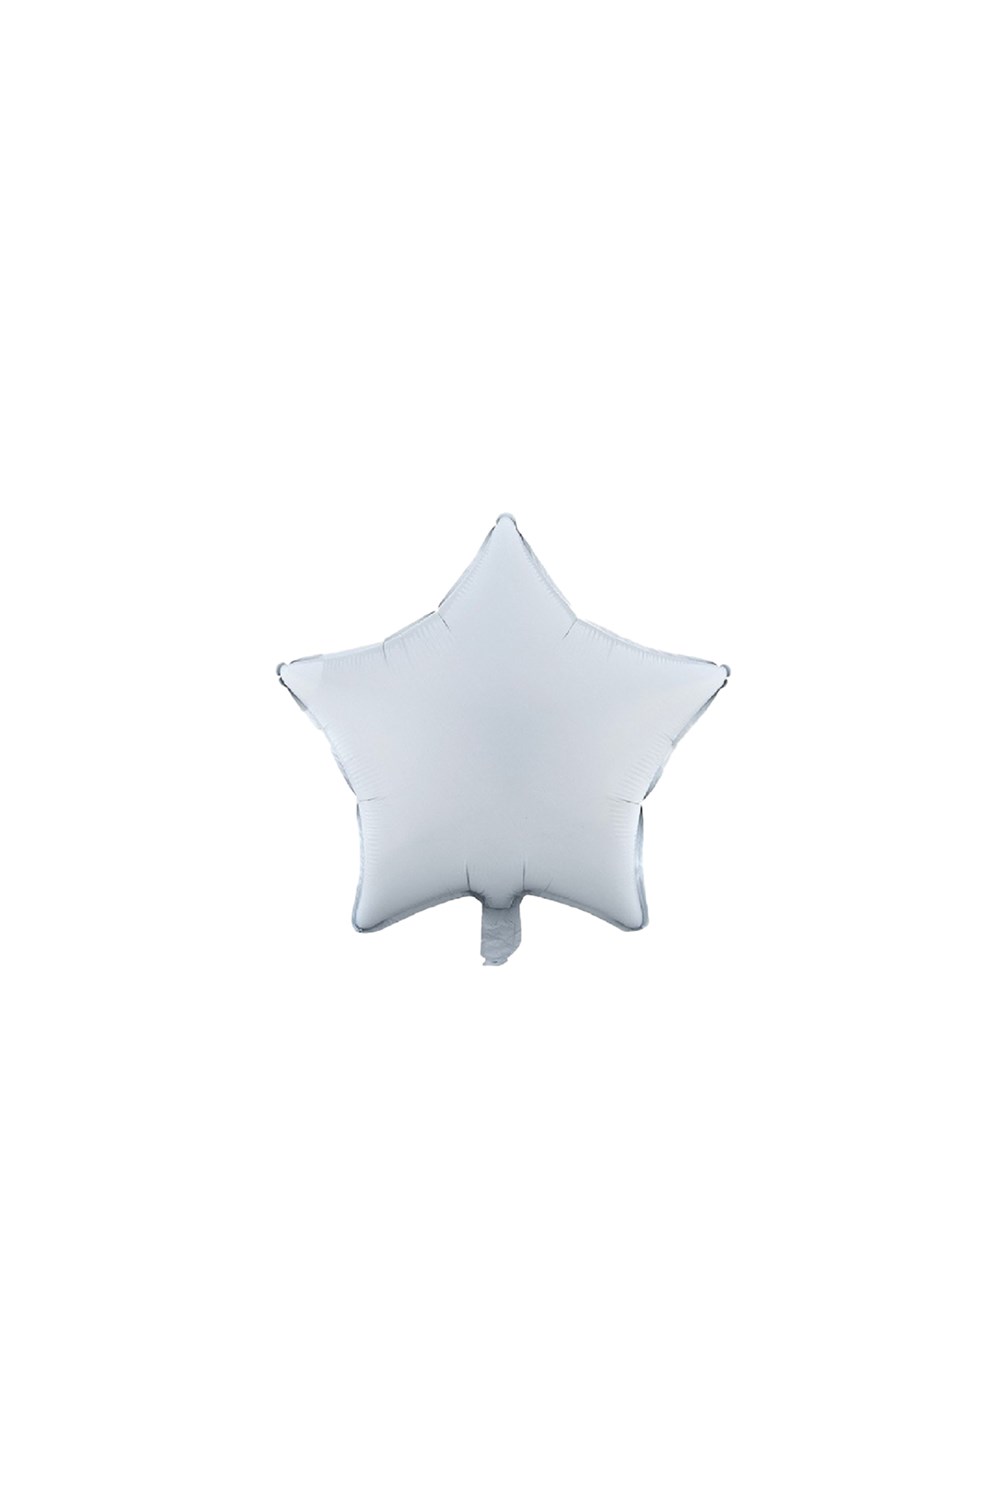 Beyaz Yıldız Folyo Balon 45cm